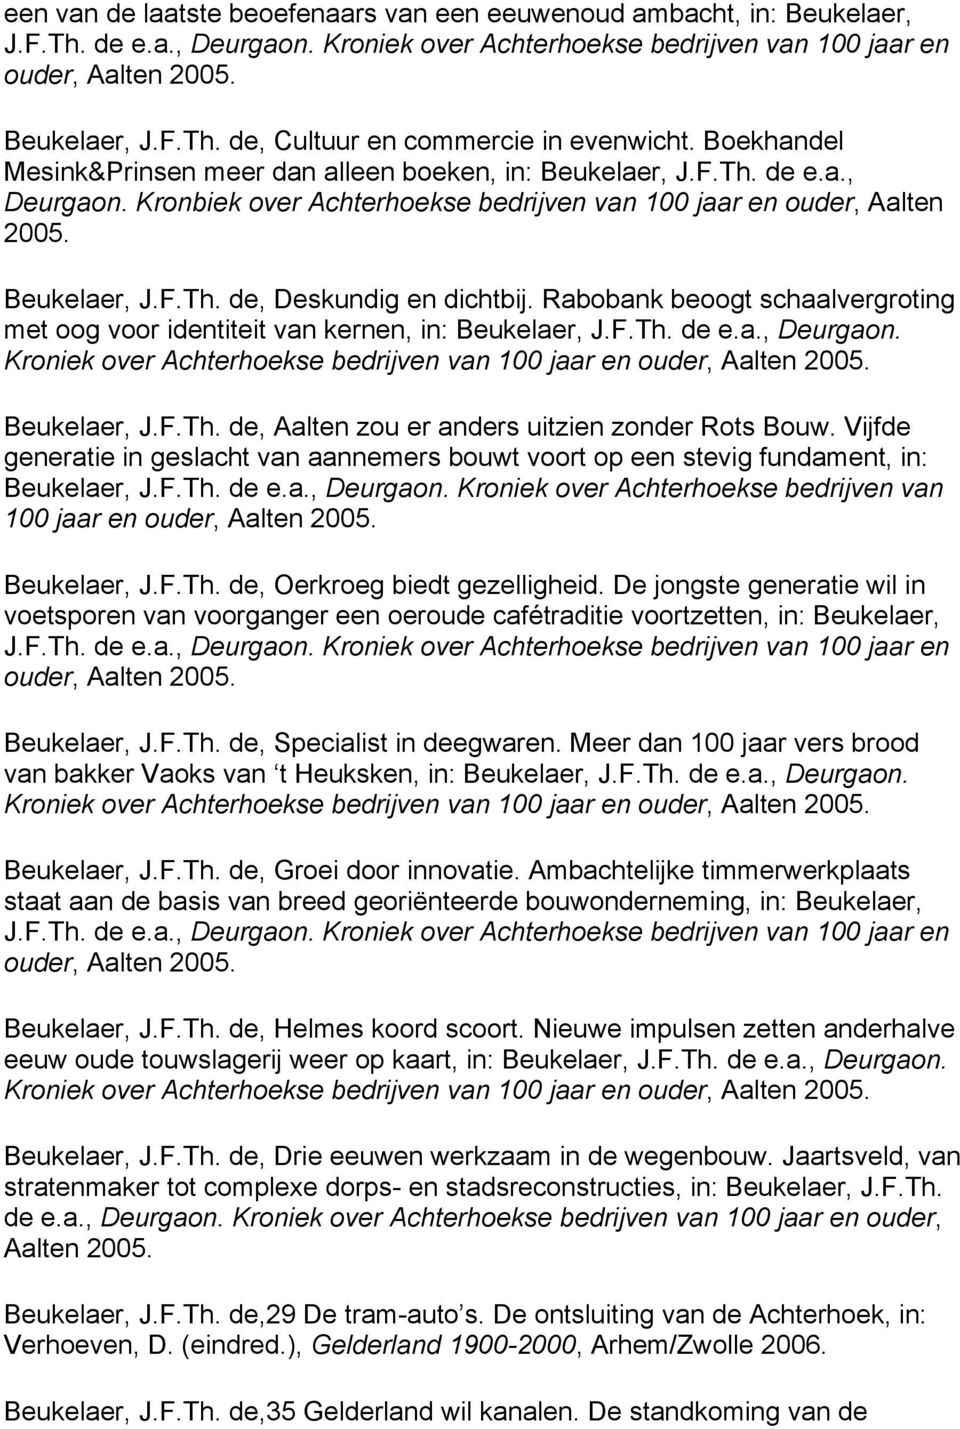 Rabobank beoogt schaalvergroting met oog voor identiteit van kernen, in: Beukelaer, J.F.Th. de e.a., Deurgaon. Kroniek over Achterhoekse bedrijven van 100 jaar en ouder, Aalten 2005. Beukelaer, J.F.Th. de, Aalten zou er anders uitzien zonder Rots Bouw.